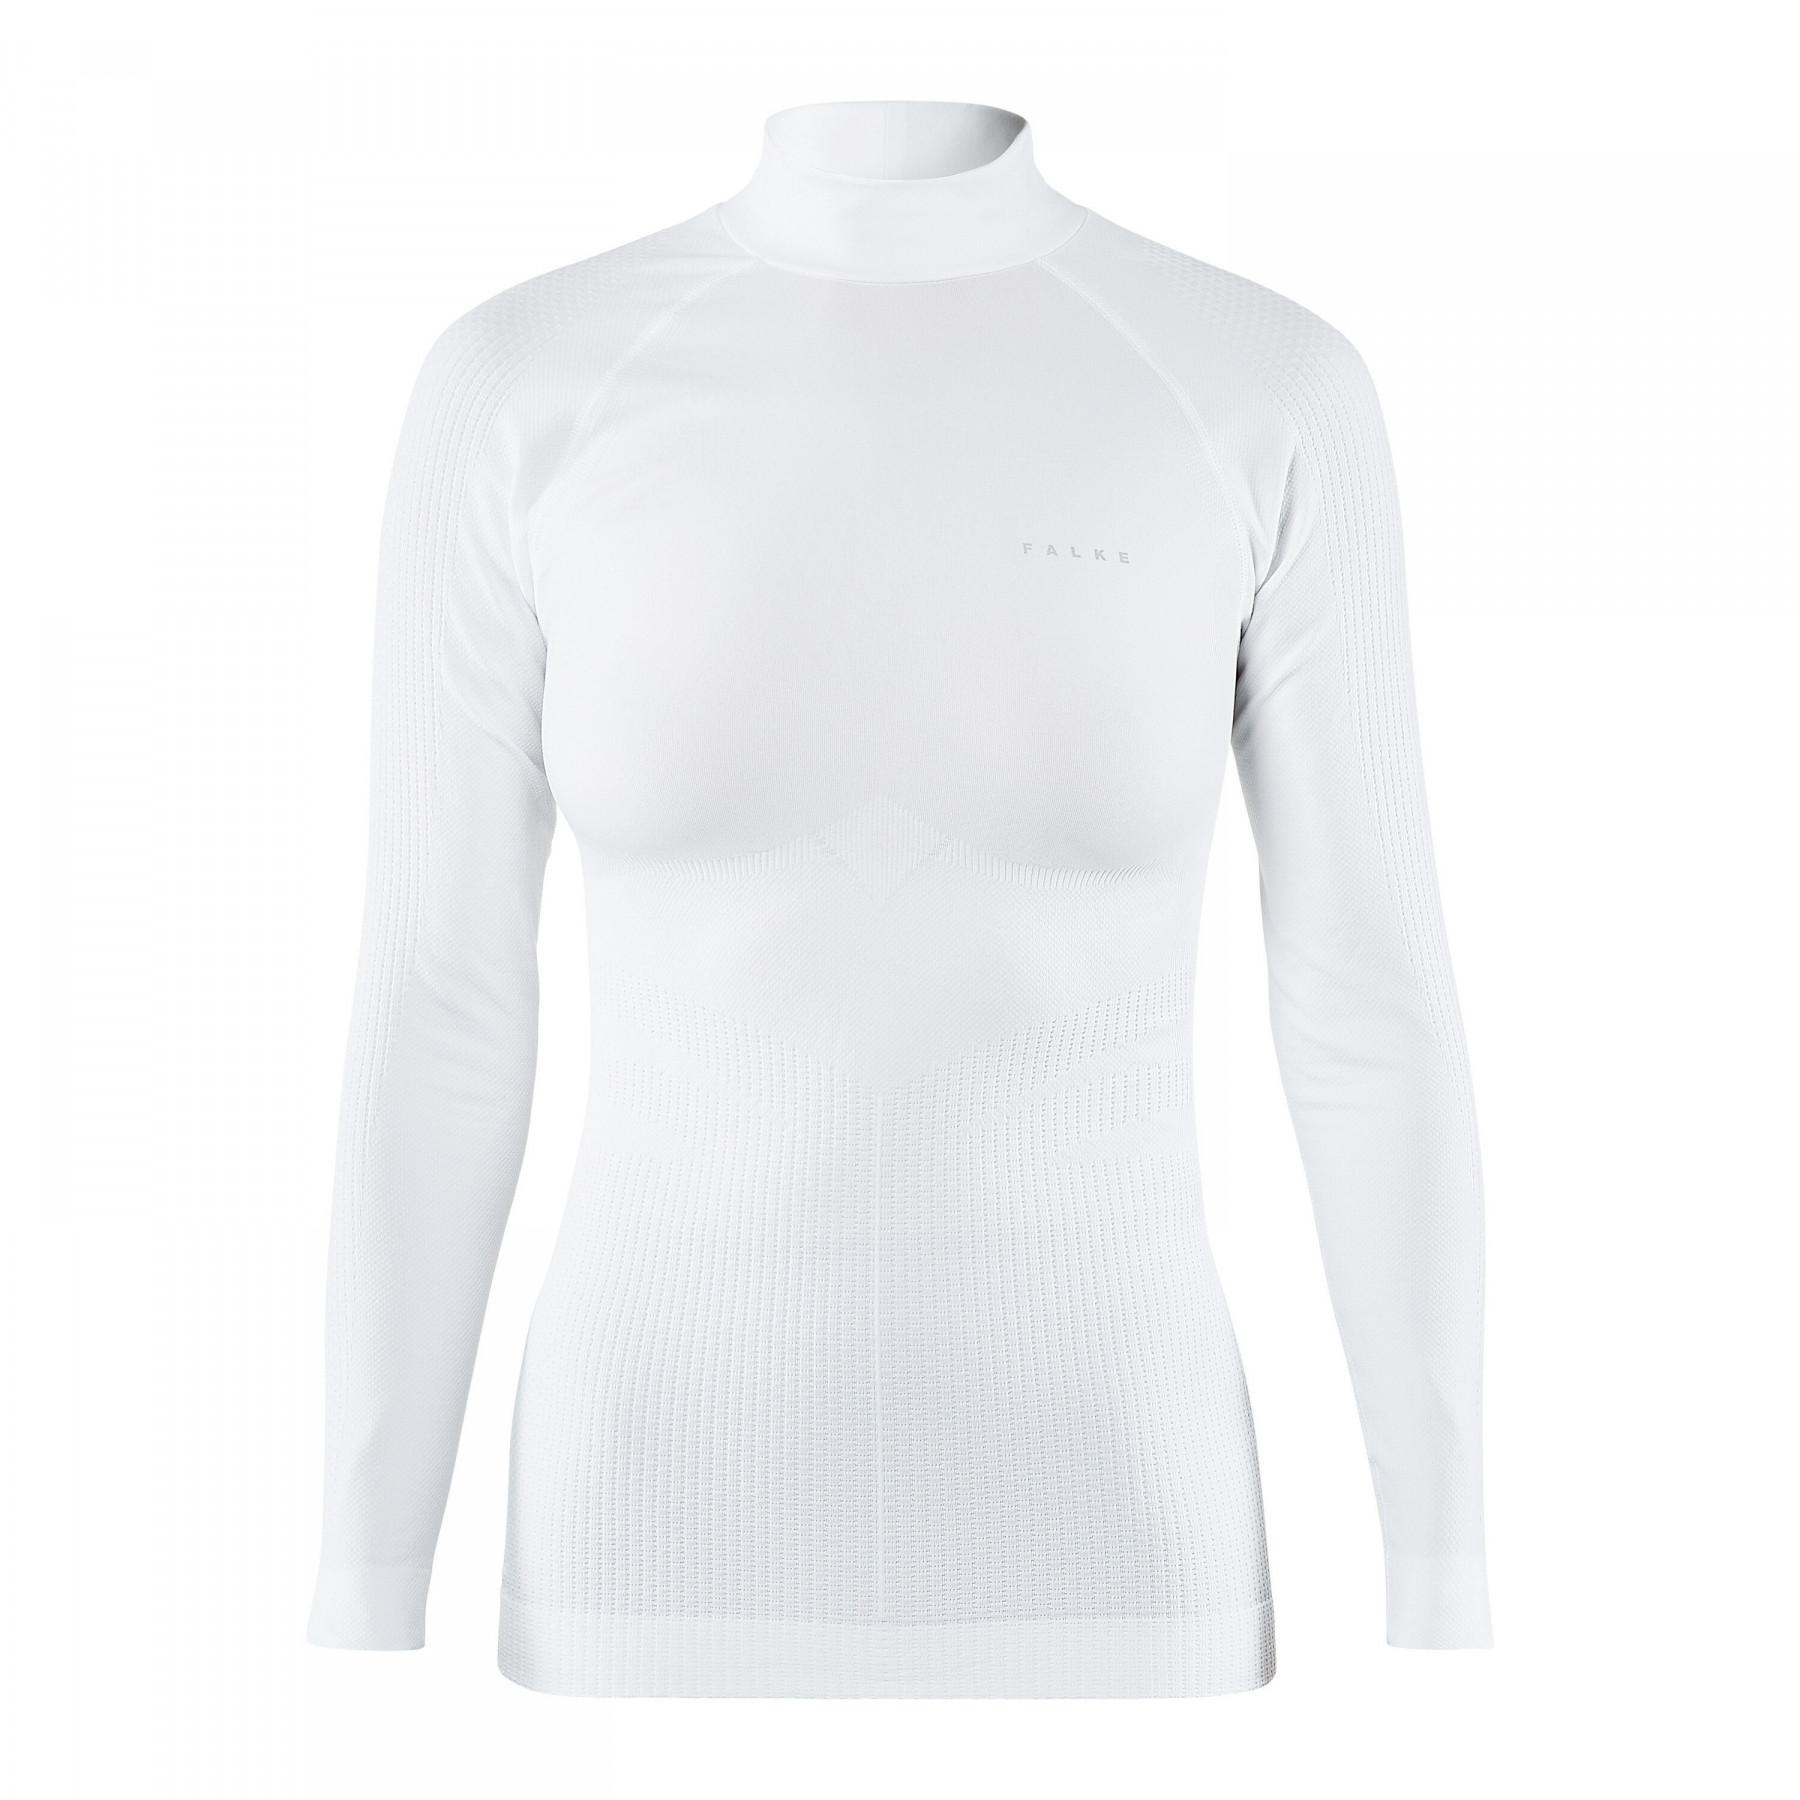 Women's long-sleeved T-shirt Falke SK Impulse